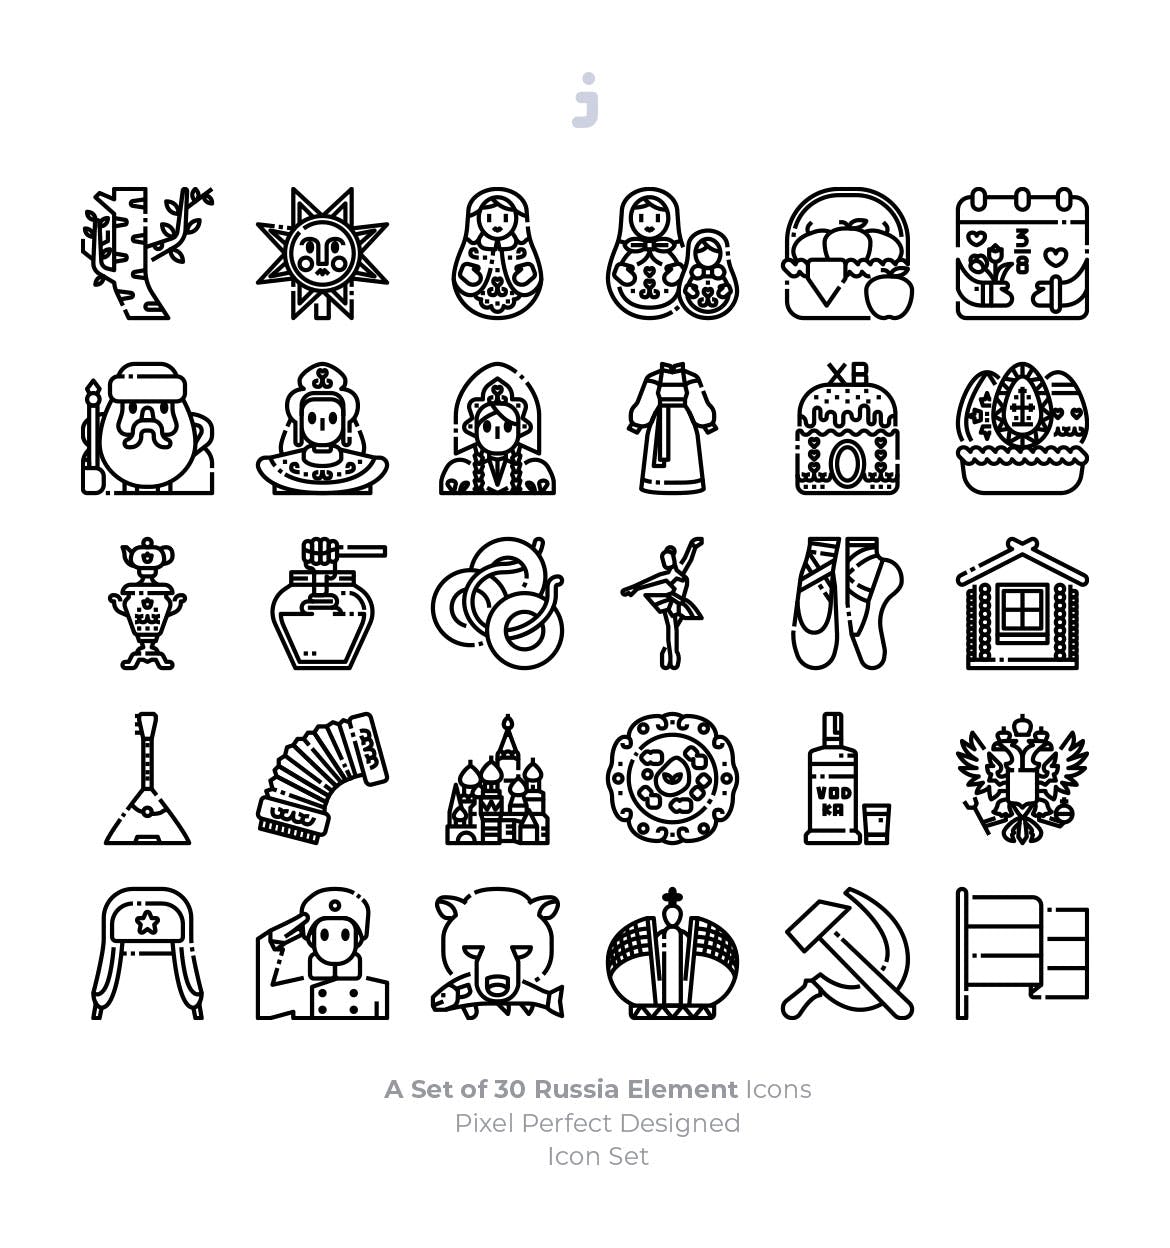 30枚彩色俄罗斯民族元素矢量素材库精选图标 30 Russia Element Icons插图(2)